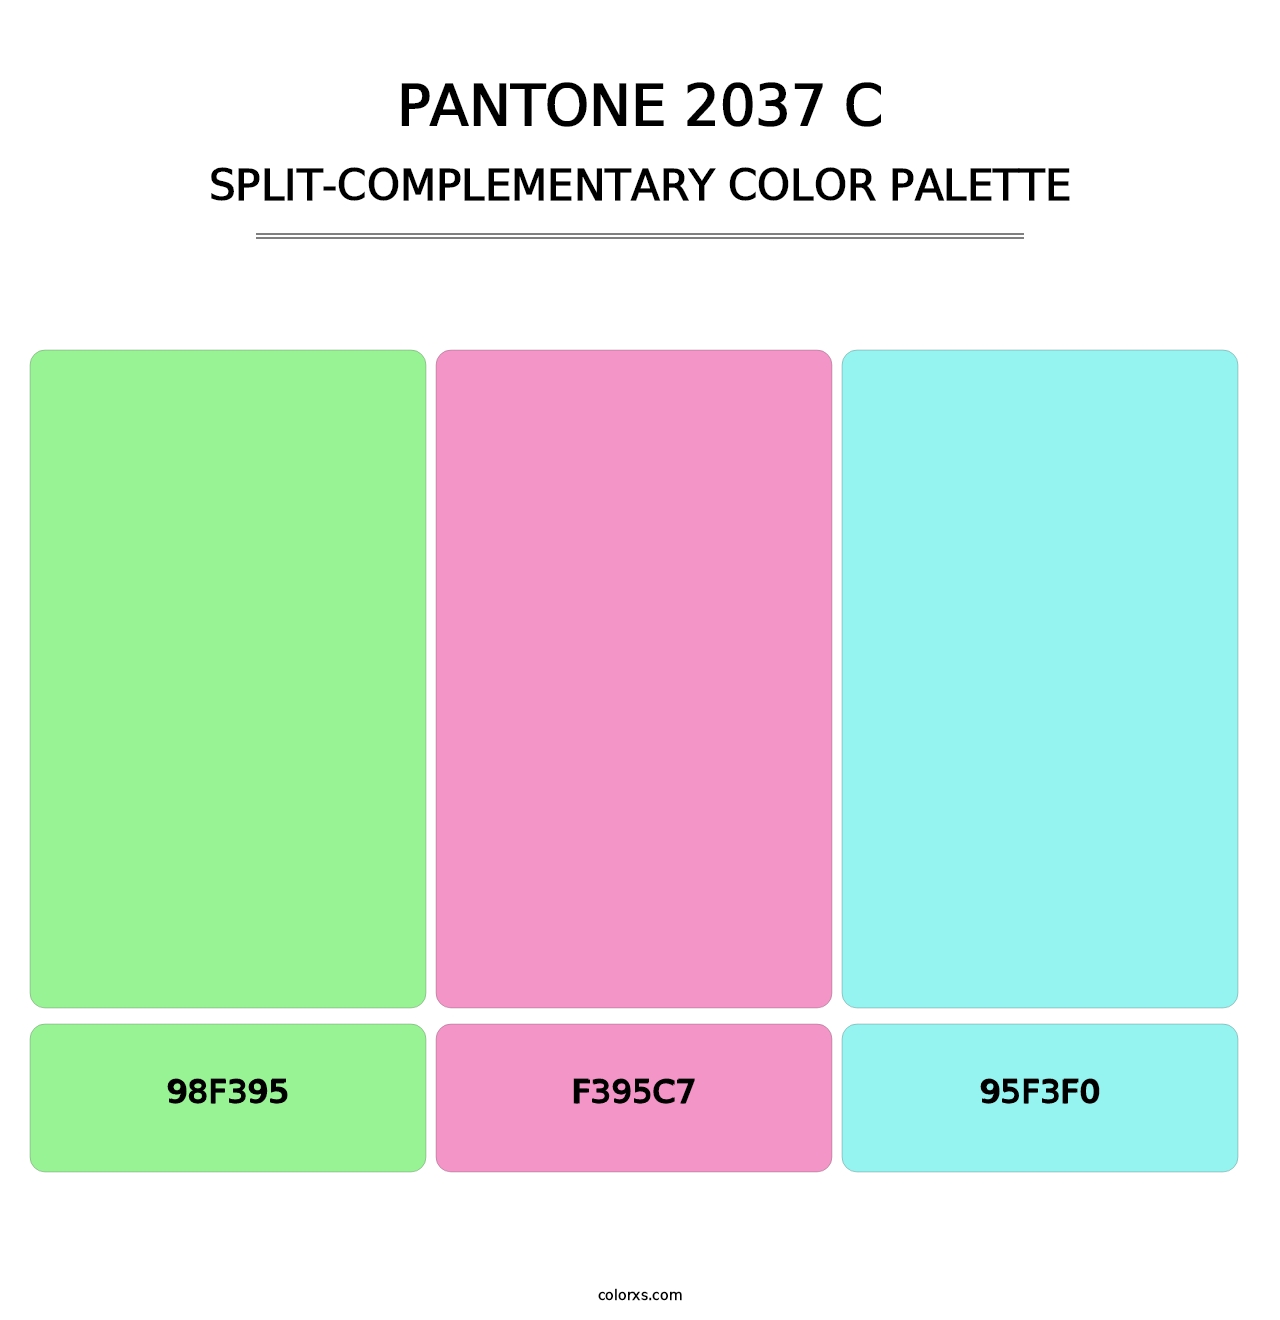 PANTONE 2037 C - Split-Complementary Color Palette